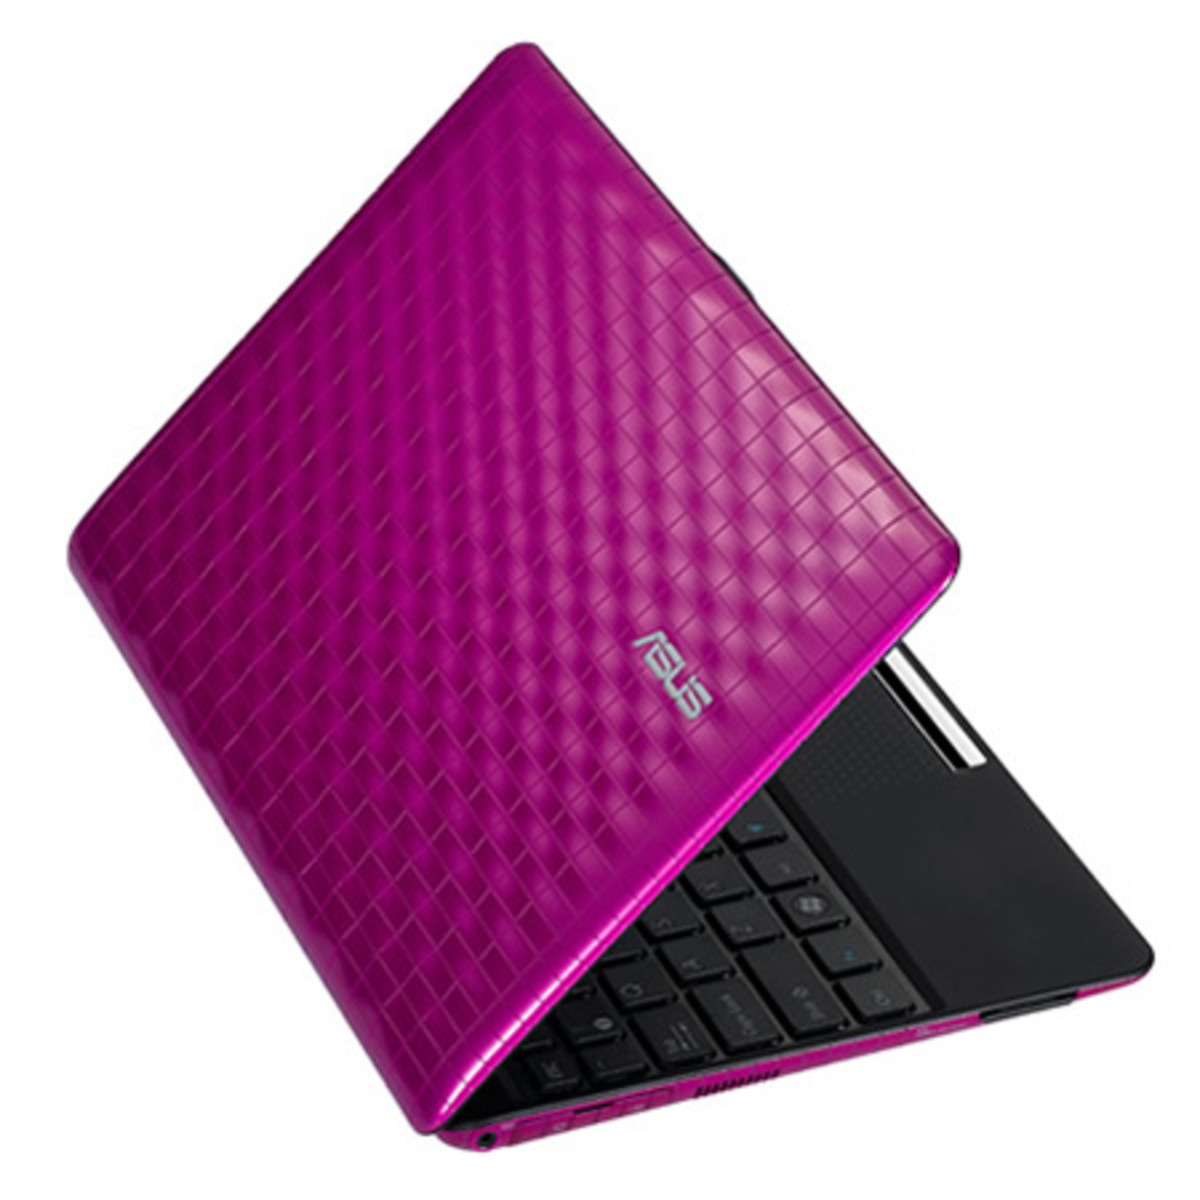 Asus Eee PC Hot Pink Laptop